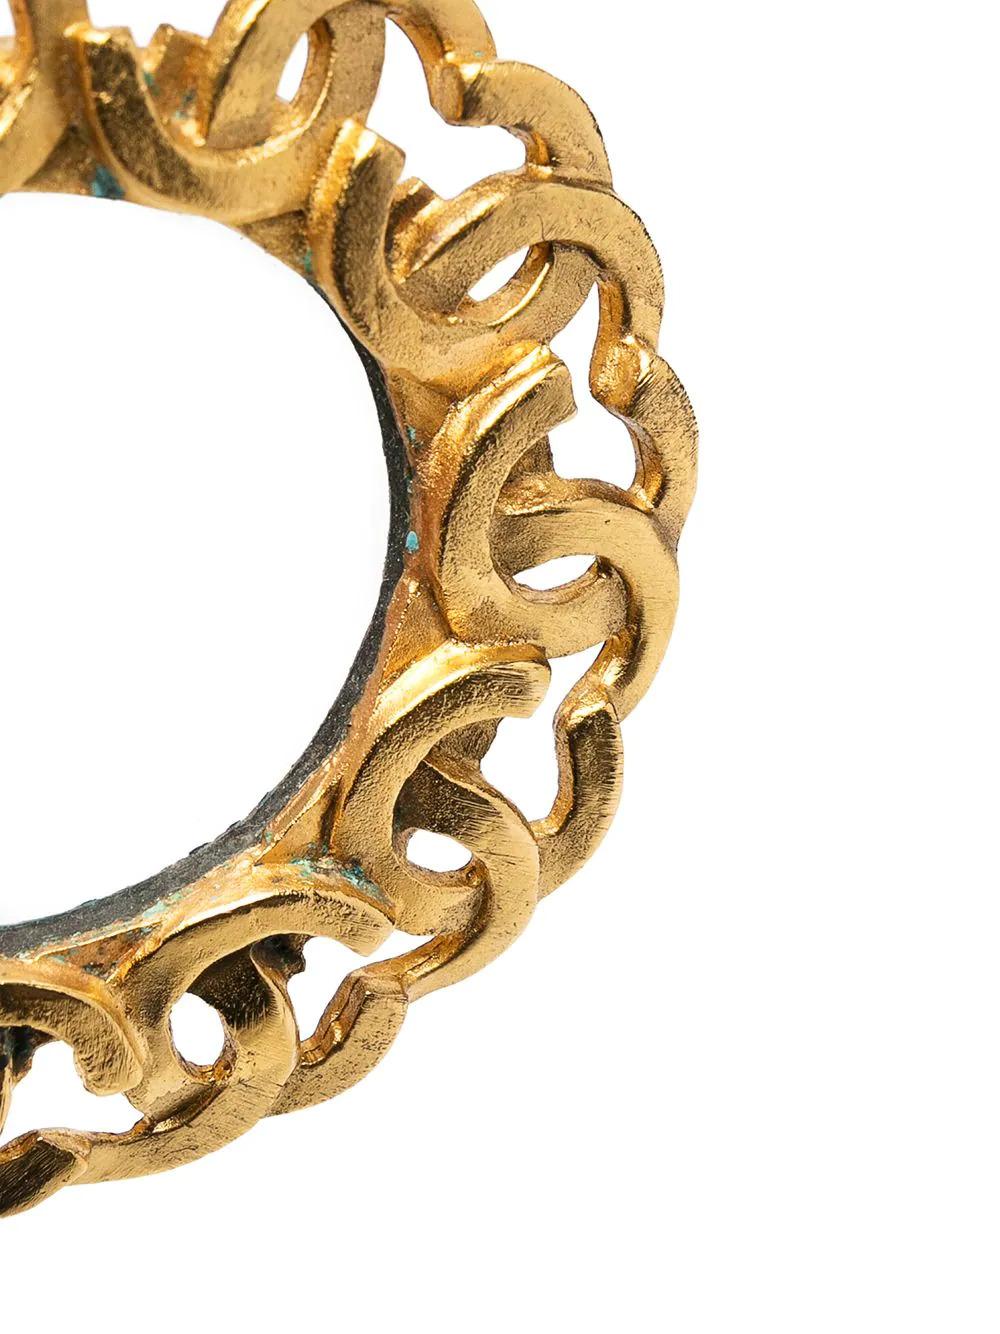 Un porte-clés vintage qui joue avec les logos en trompe-l'œil dans le plus pur style Chanel. Ce porte-clés Chanel est plaqué or et comporte un anneau de monogrammes tessellés pour former une chaîne.

Couleur : Or, clair

Matériau : Verre,